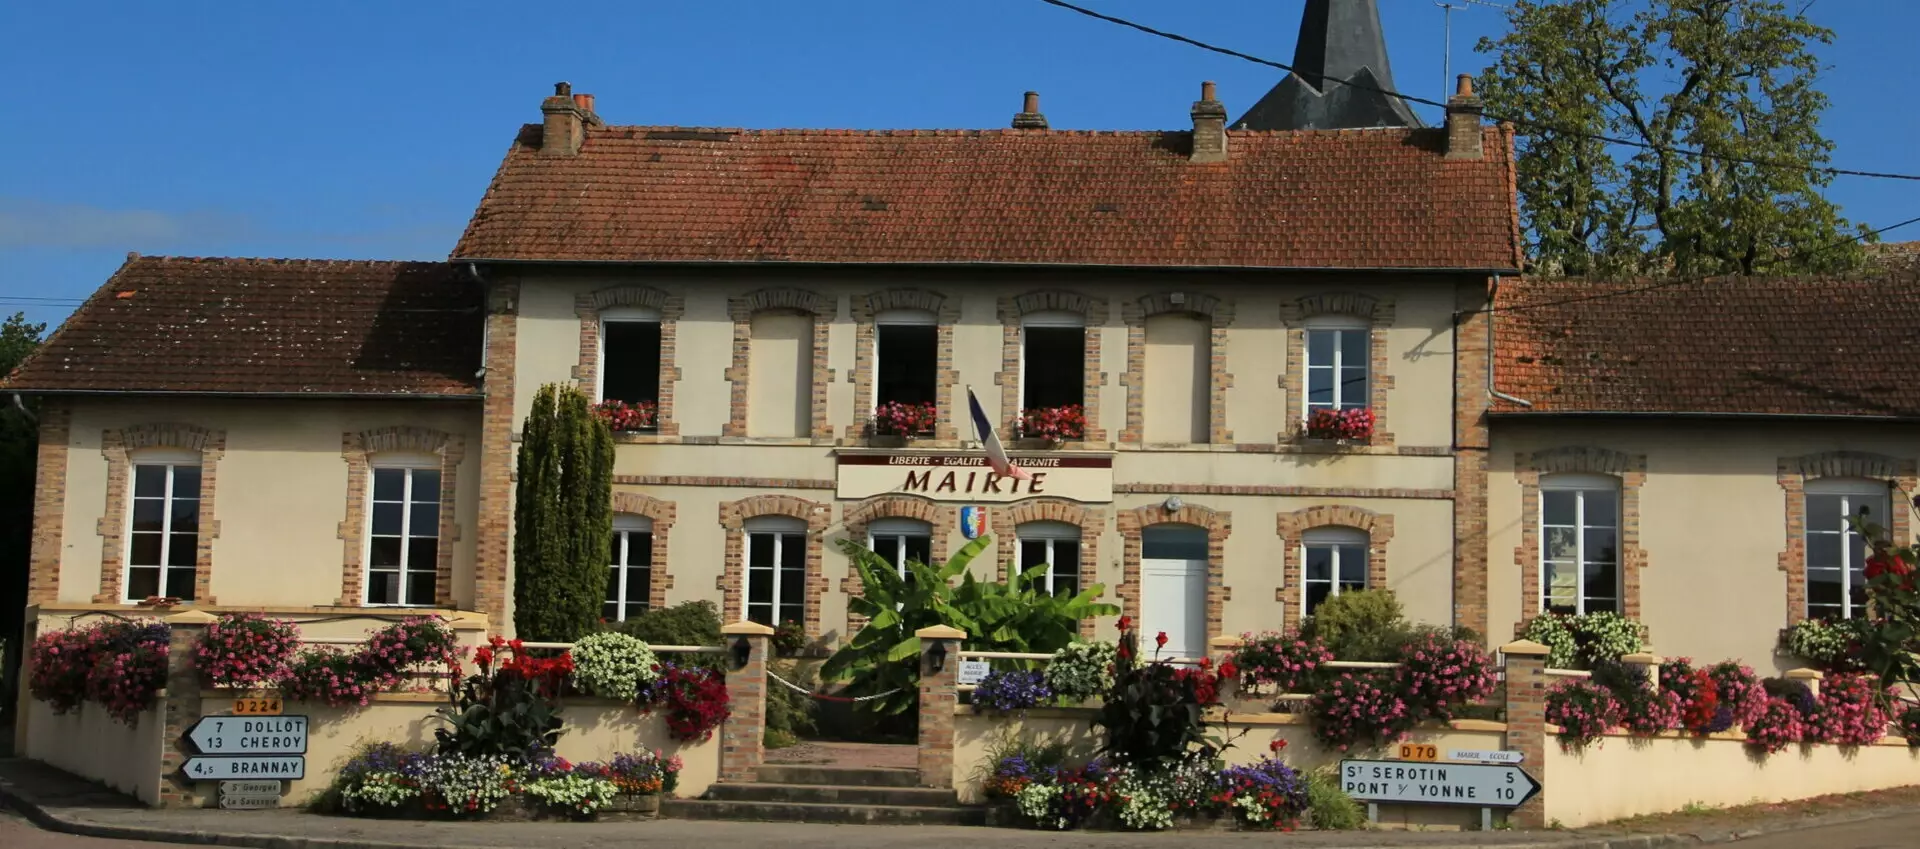 Les artisans & commerçant de la commune de Villebougis (89) Yonne